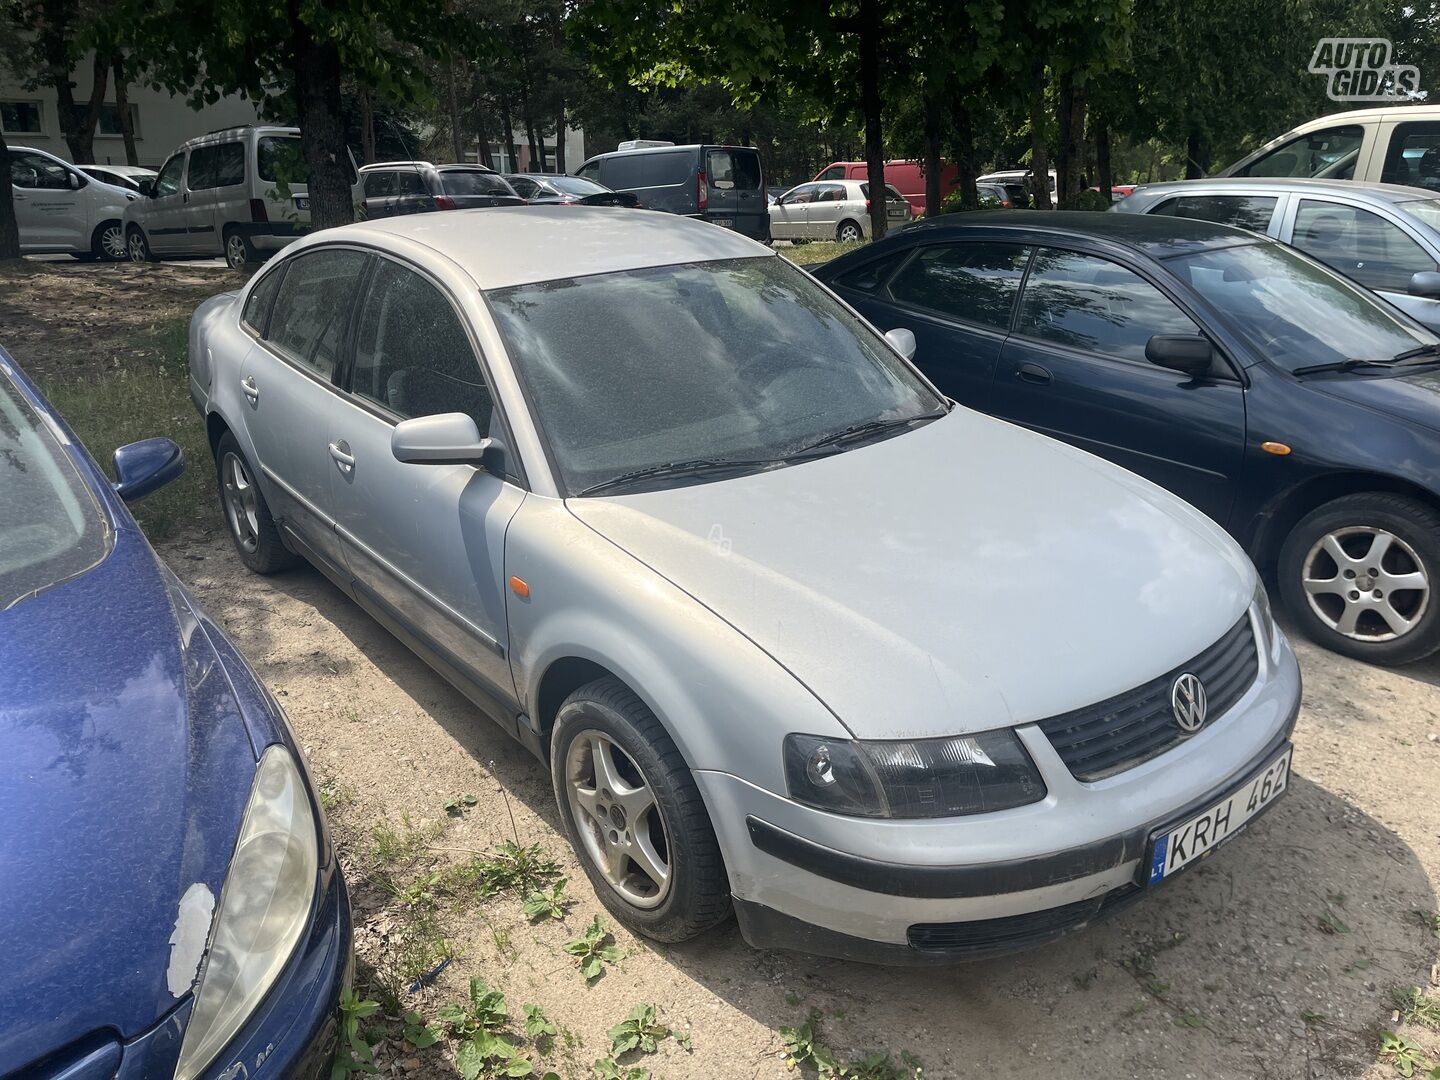 Volkswagen Passat 1997 y Sedan